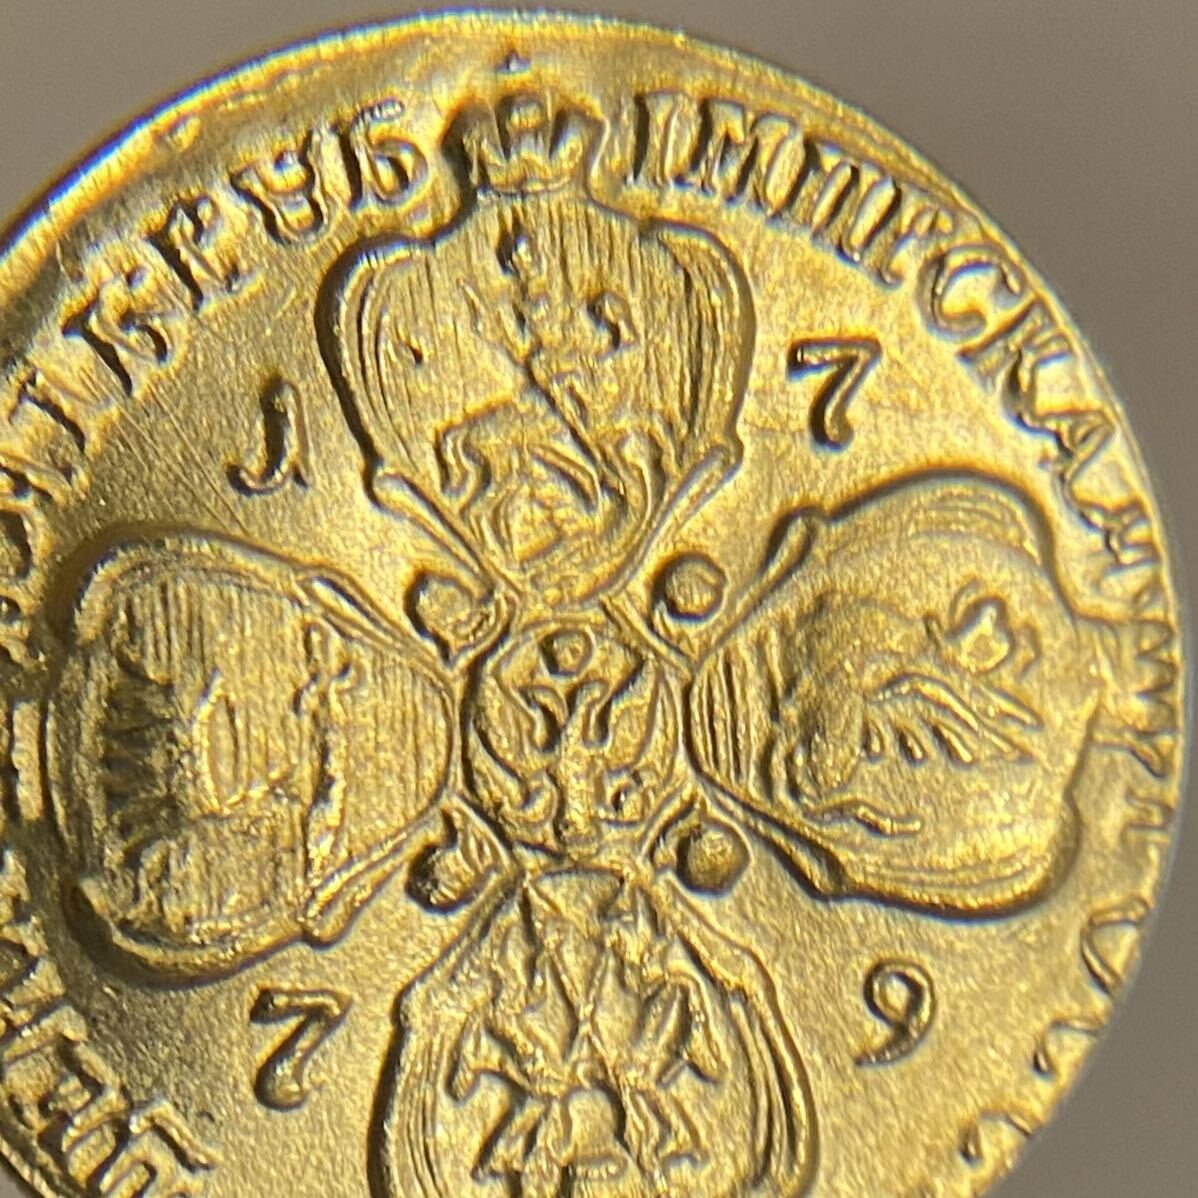 レア ロシア帝国古銭 約5.38g エカチェリーナ2世 1779年銘 小型金貨 一円貨幣 硬貨骨董品コインコレクション エラーコインの画像4